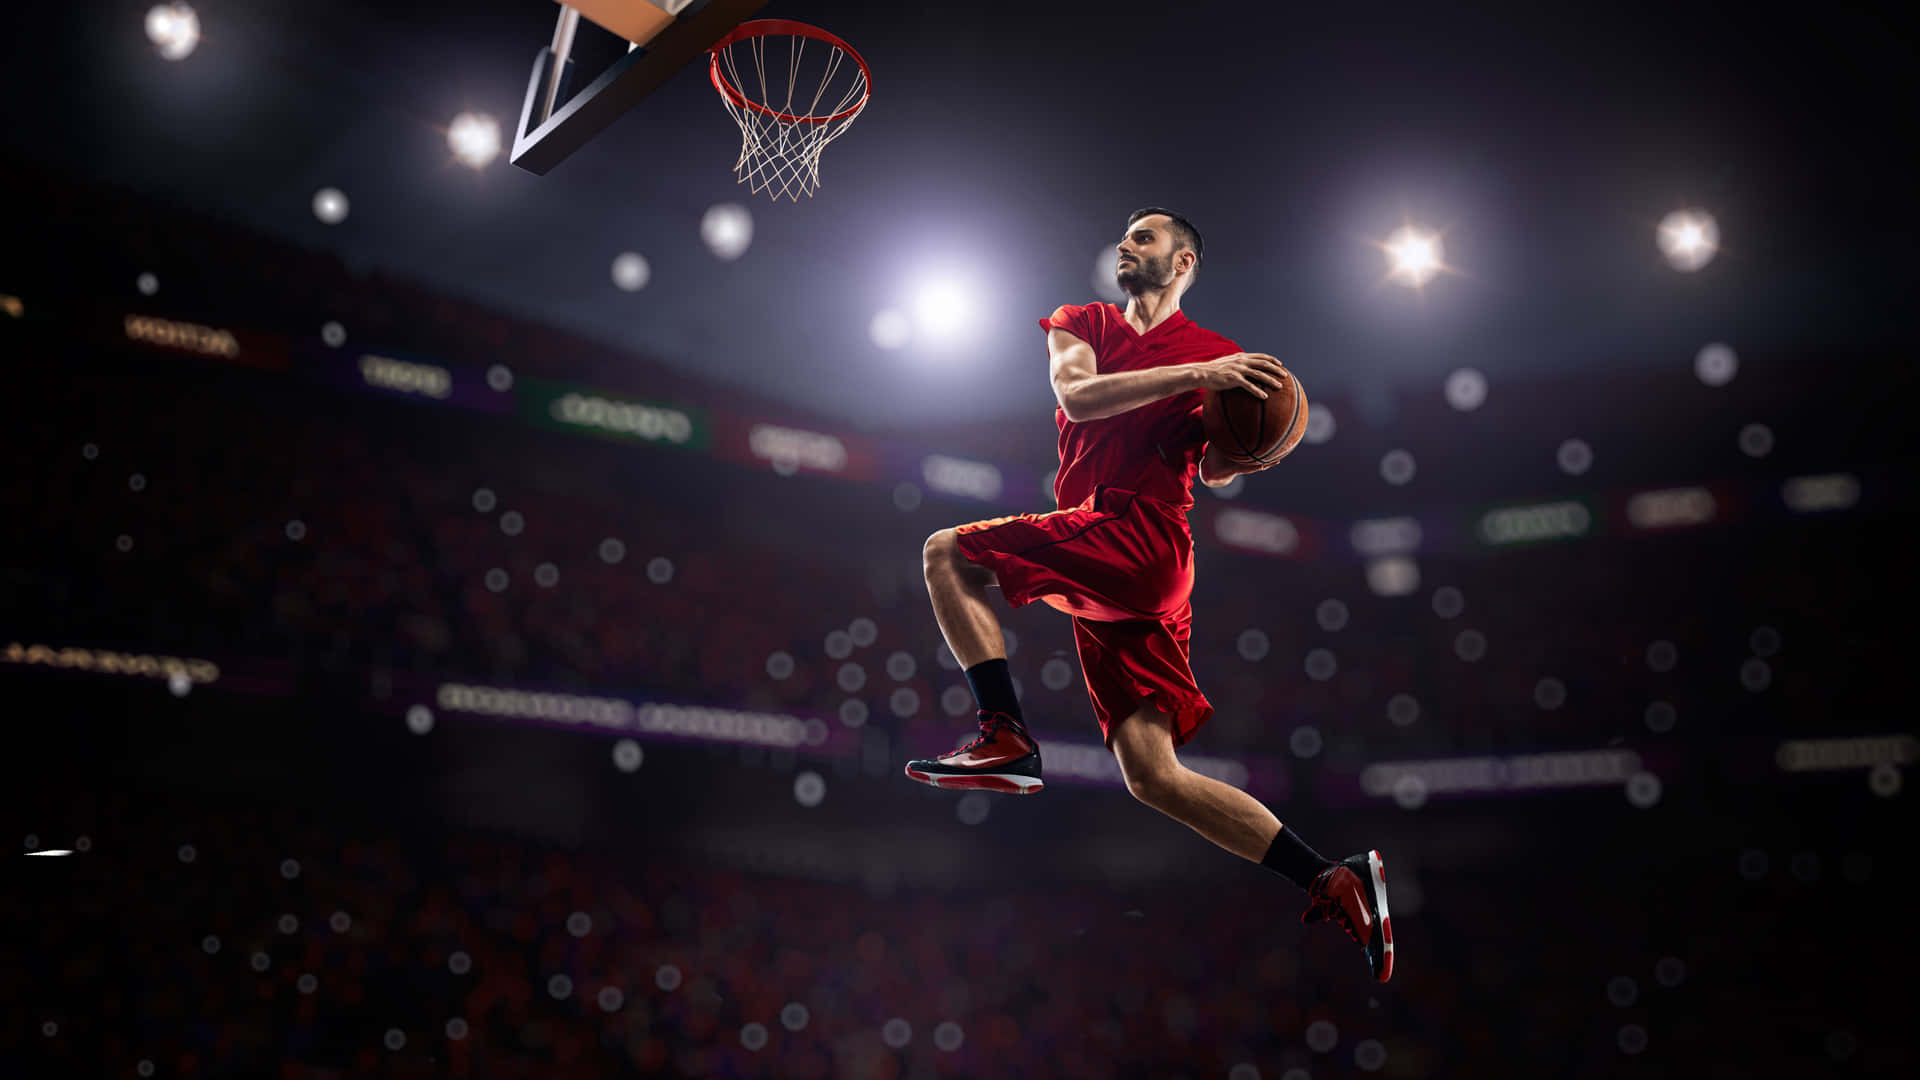 Basketballspielerspringt, Um Zu Schießen Hintergrund.